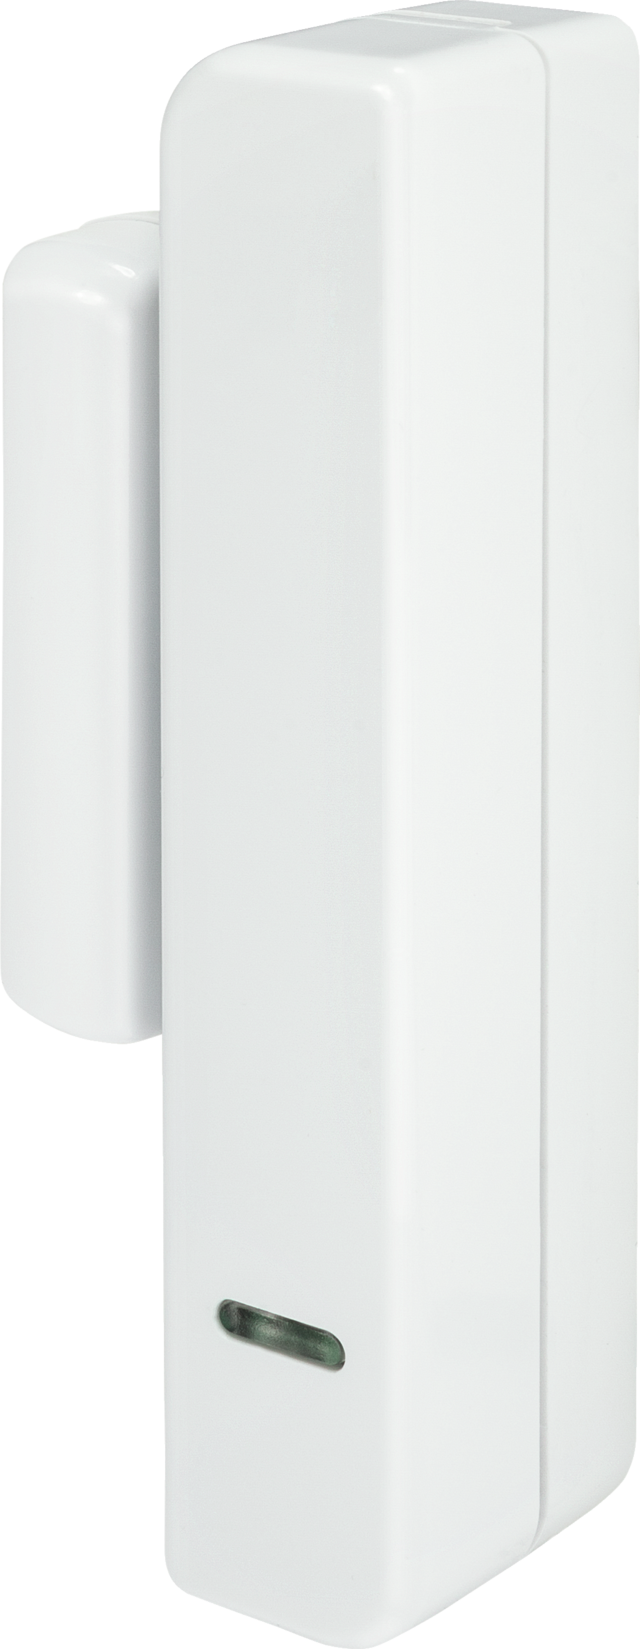 Secvest Radiorilevatore di Apertura Sottile (colore bianco) vista frontale sinistra